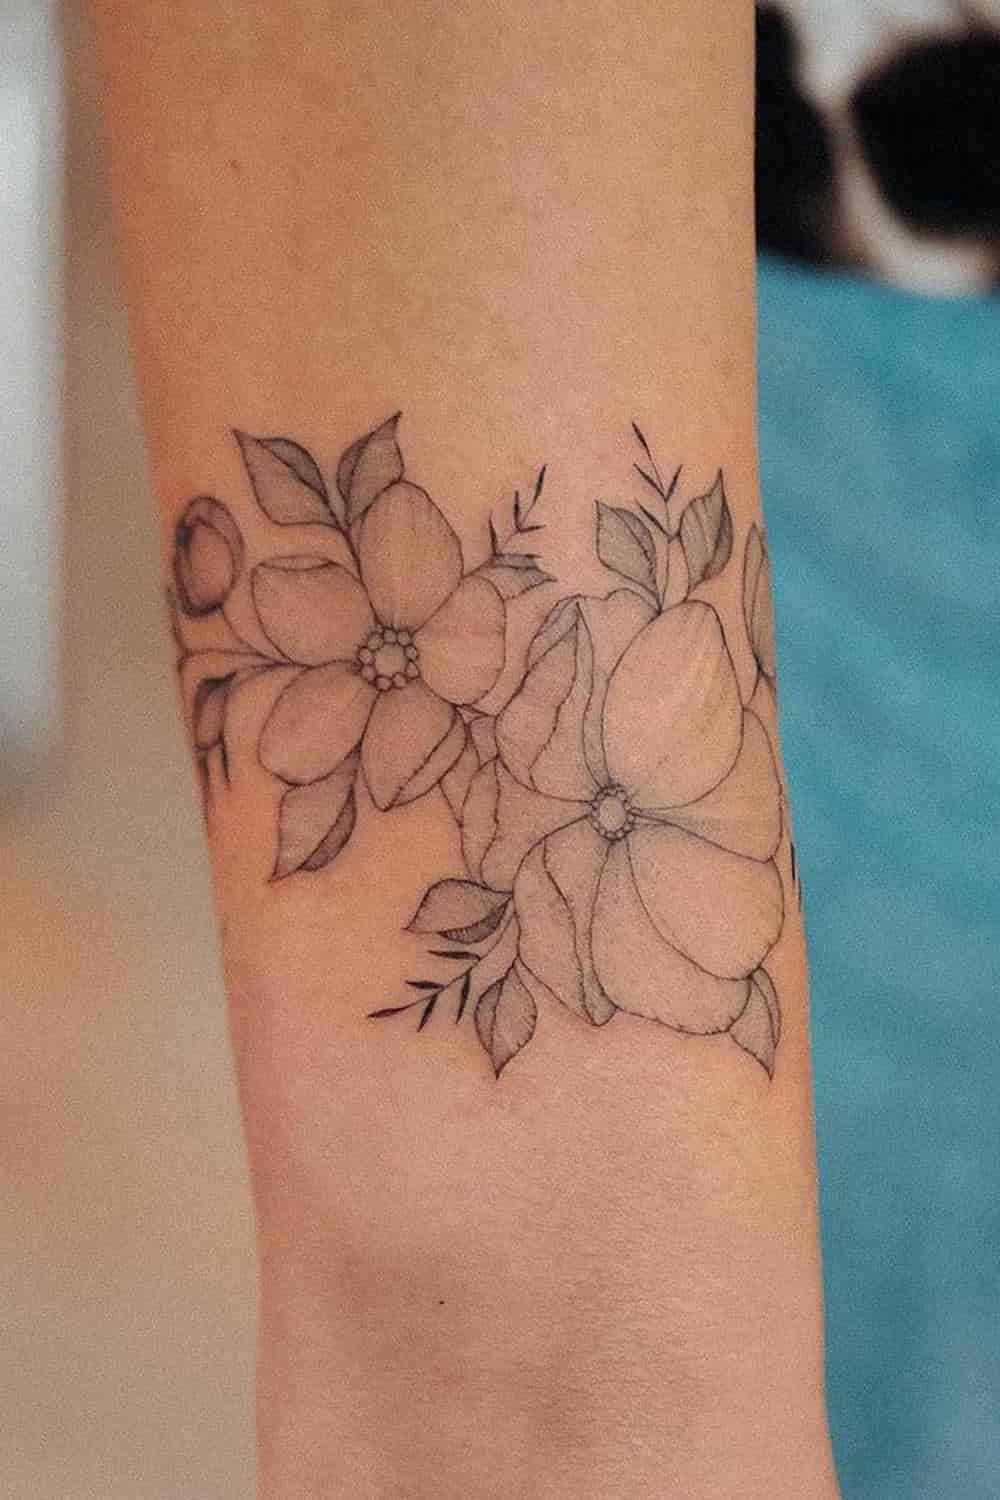 tatuagem-floral-@bunami-5 